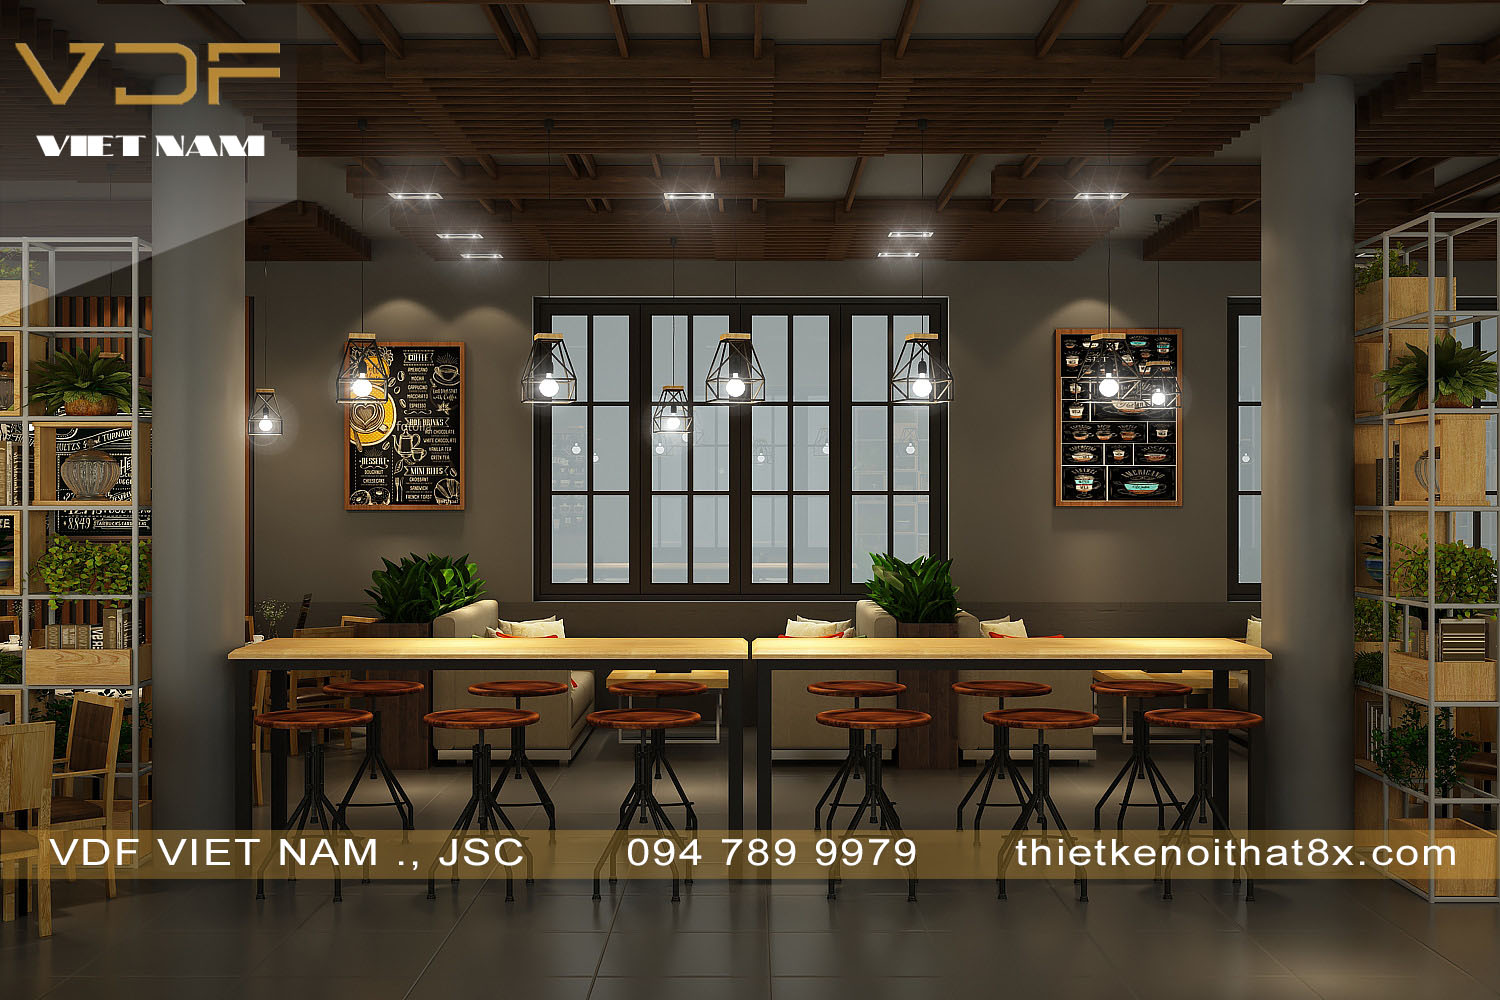  Thiết kế nội thất quán cafe xanh mang phong cách hiện đại 